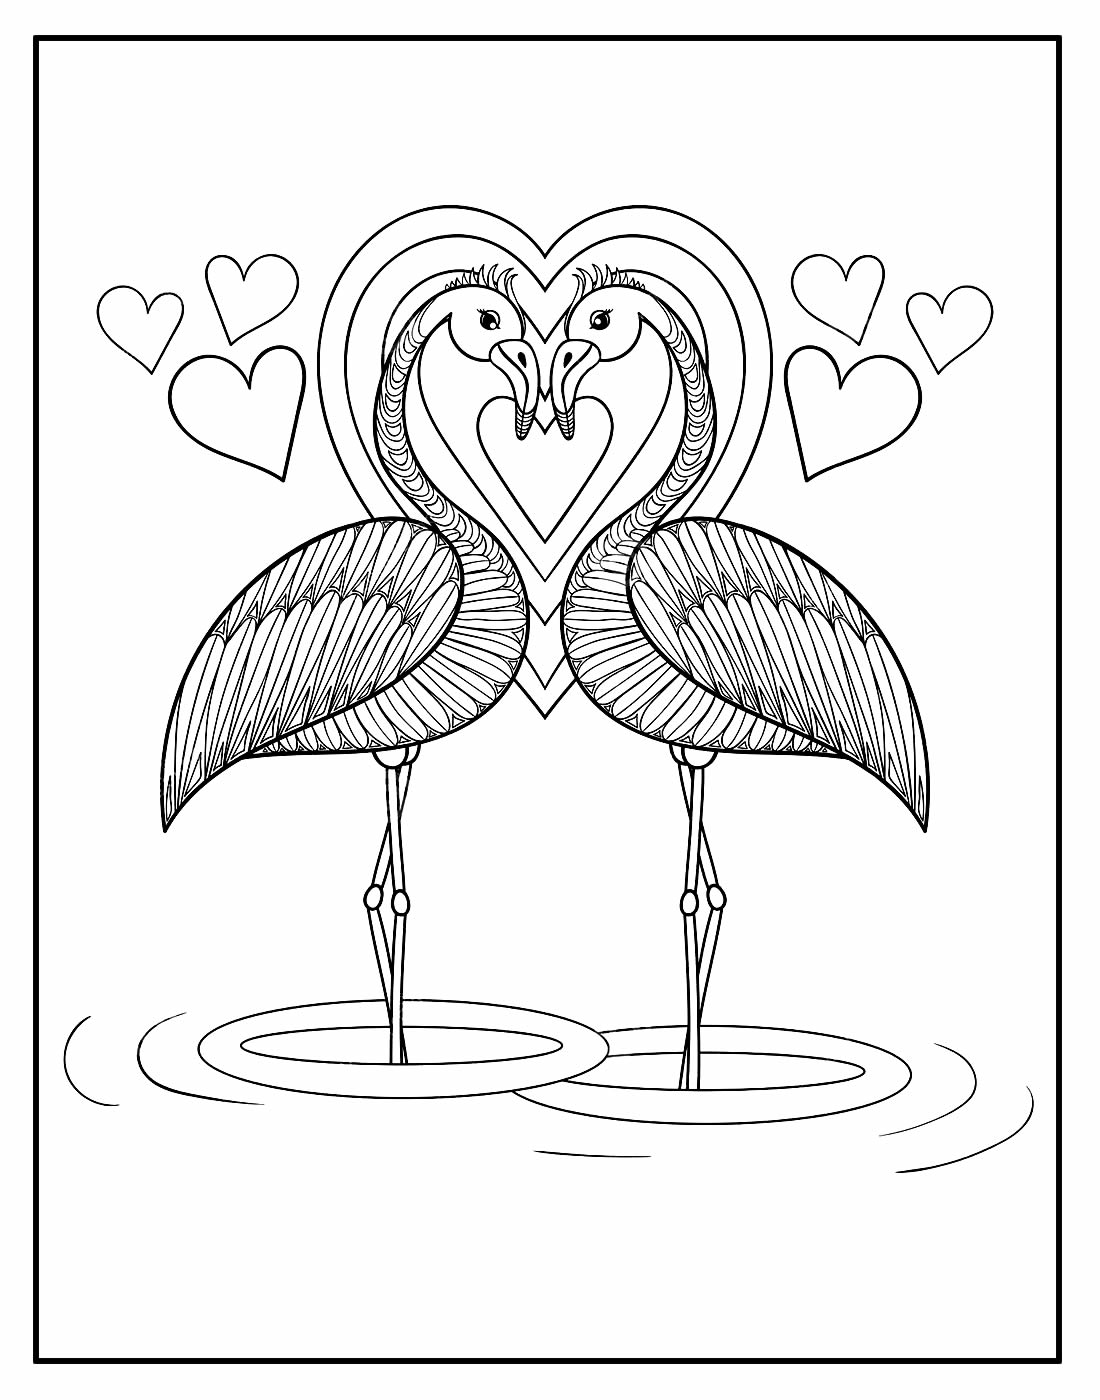 Desenho para colorir de Flamingo